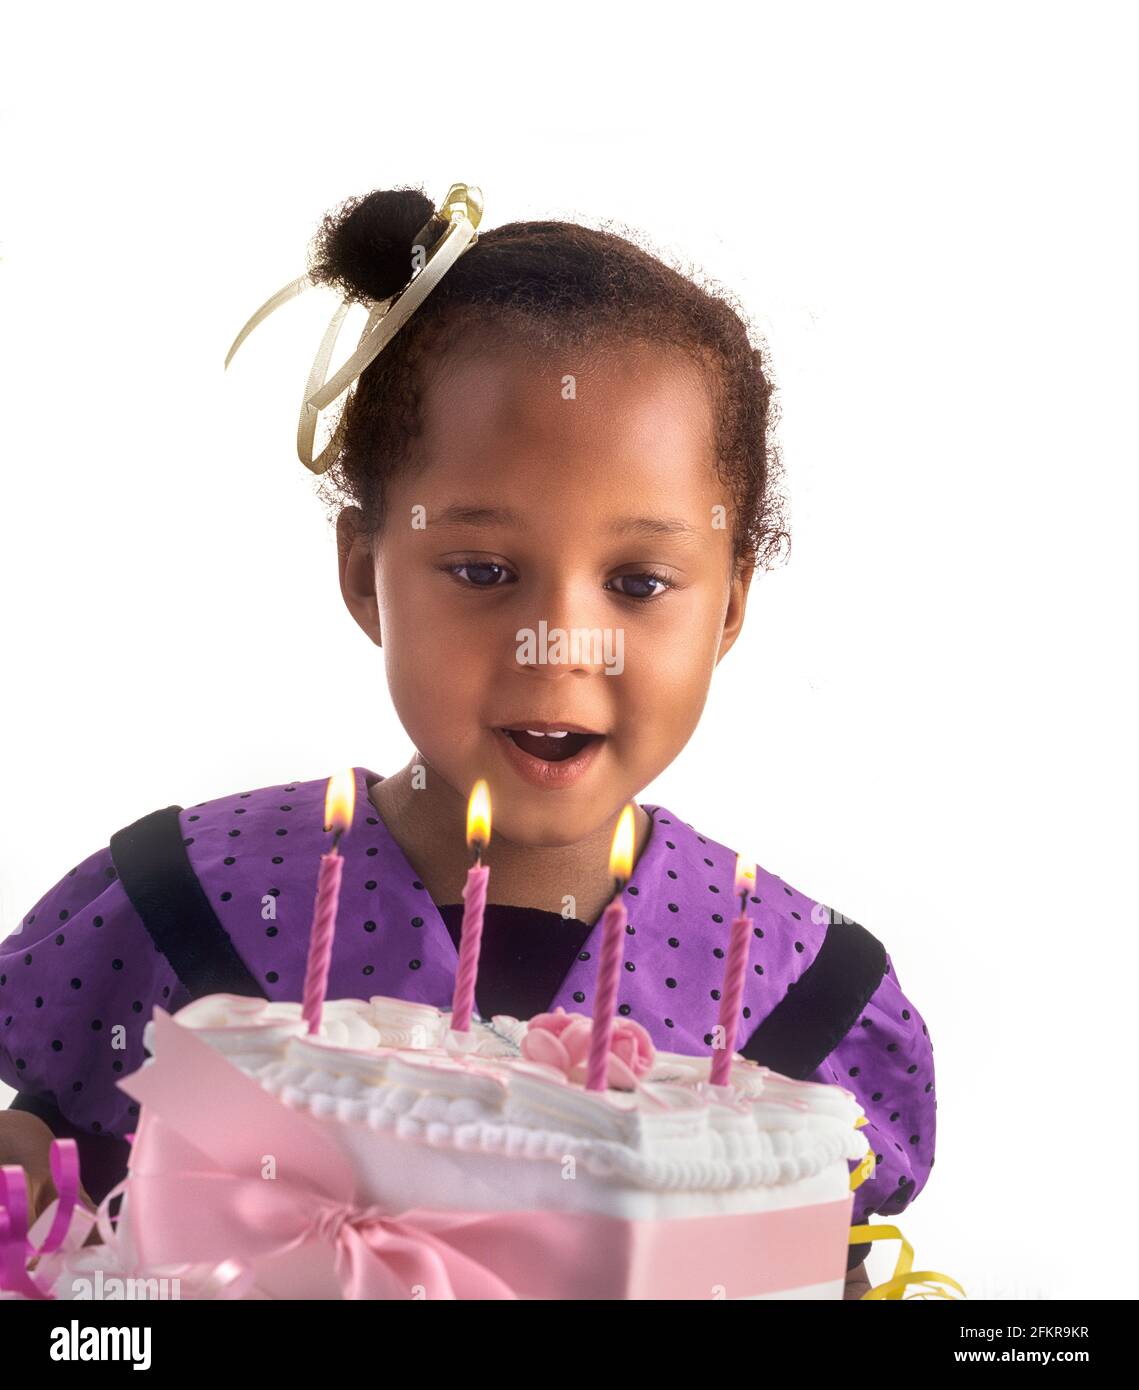 BÉBÉ JOYEUX anniversaire Cake bougies 4 ans mignon jolie fille afro-caribéenne britannique célébrant avec son gâteau d'anniversaire spécial faisant un souhait sur le point de souffler les quatre bougies, fond blanc découpe Banque D'Images